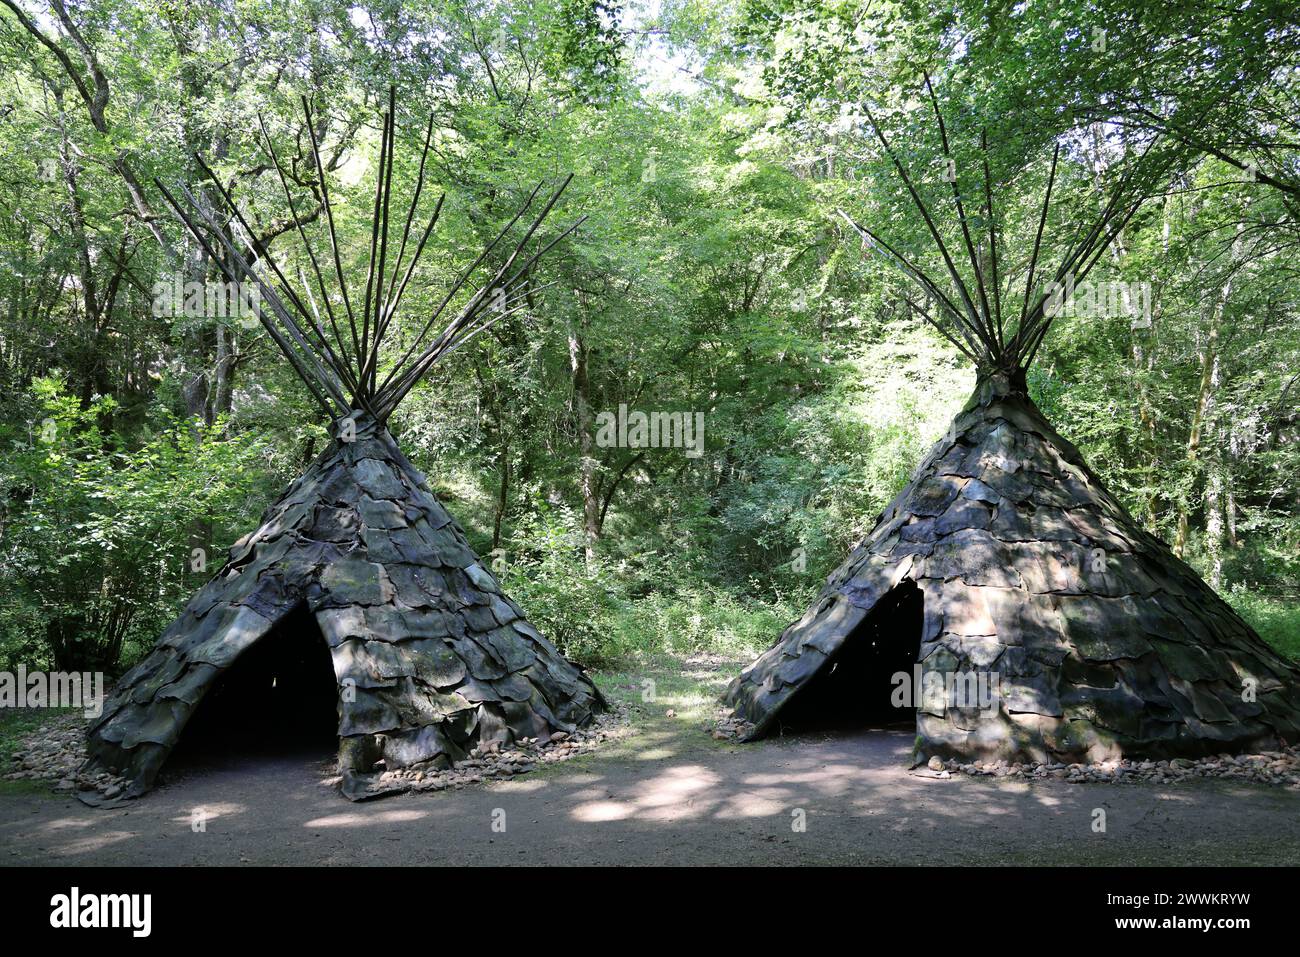 Scena di vita durante la preistoria ricostruita al Parco Prehisto nella valle del fiume Vézère nel Périgord Noir nella regione delle grotte di Lascaux. Tursac, Pér Foto Stock